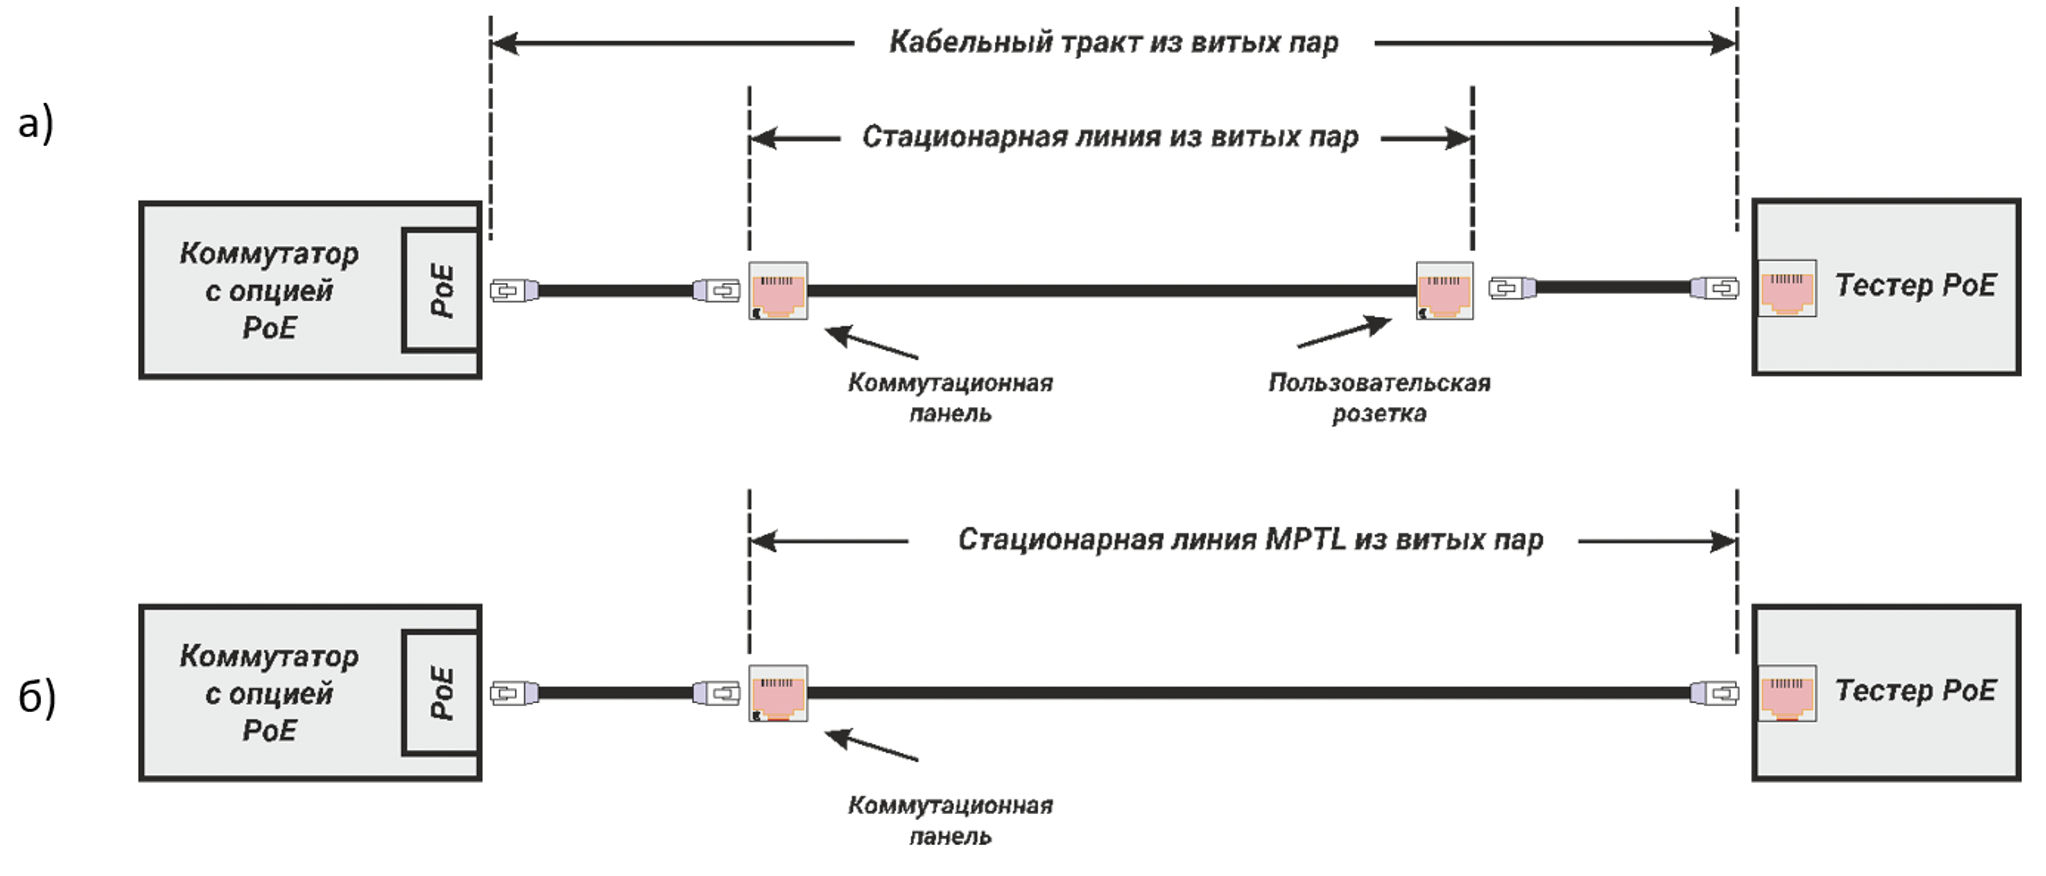 Рис. 4. Схема подключения тестера РоЕ в процессе контроля системы дистанционного питания: а) к классическому кабельному тракту; б) к кабельному тракту MPTL